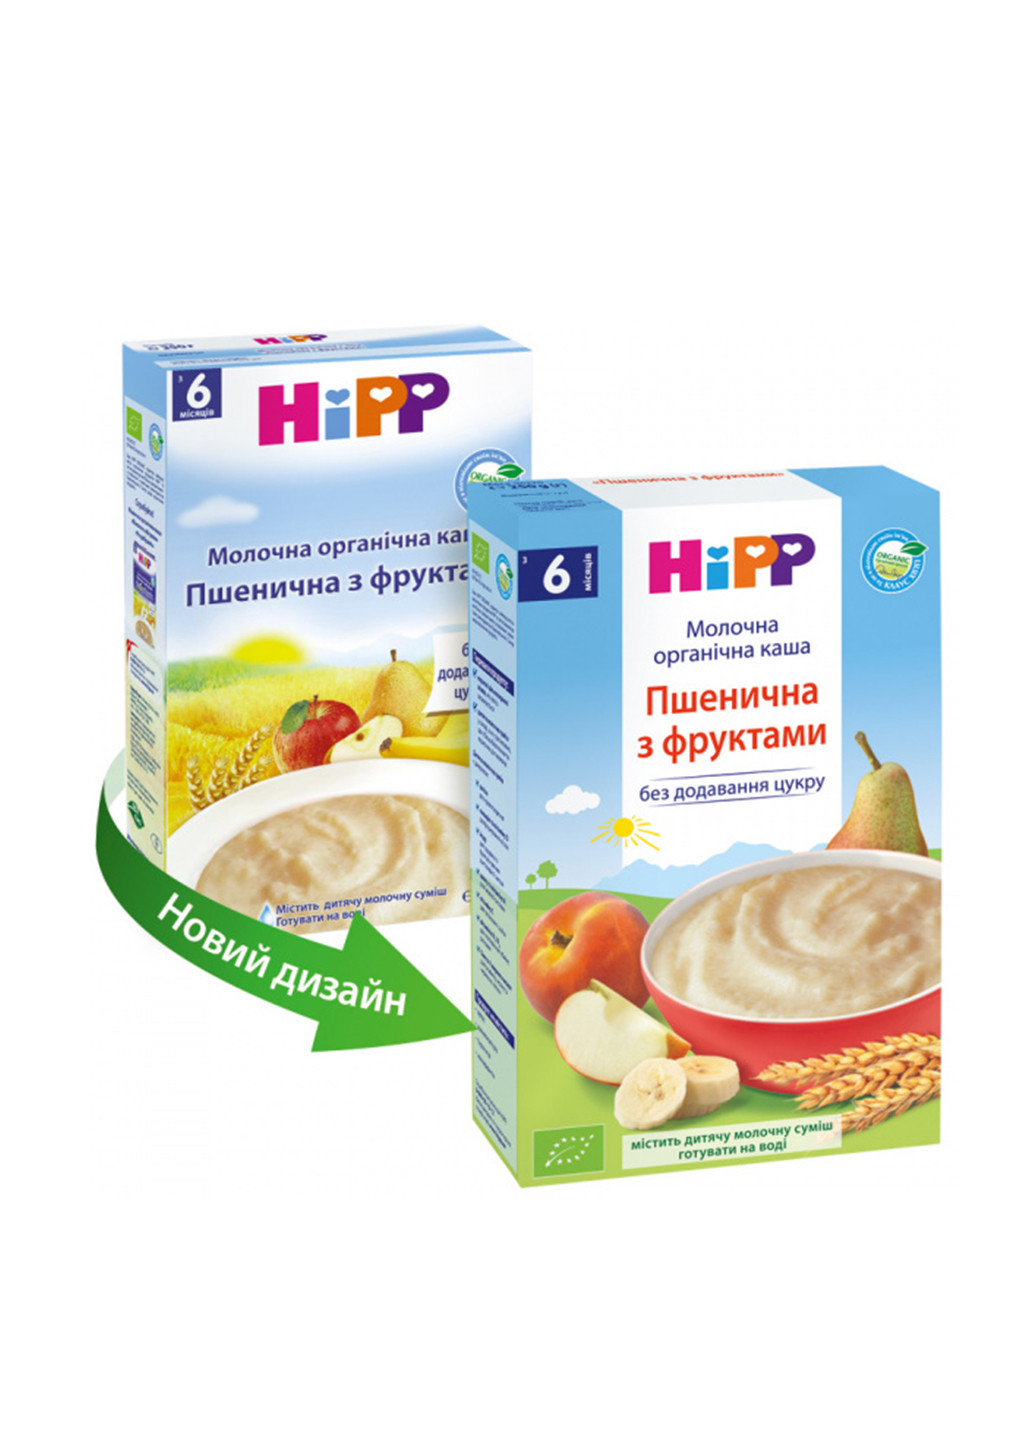 Каша молочная органическая Пшеничная с фруктами, 250 г Hipp (131406418)